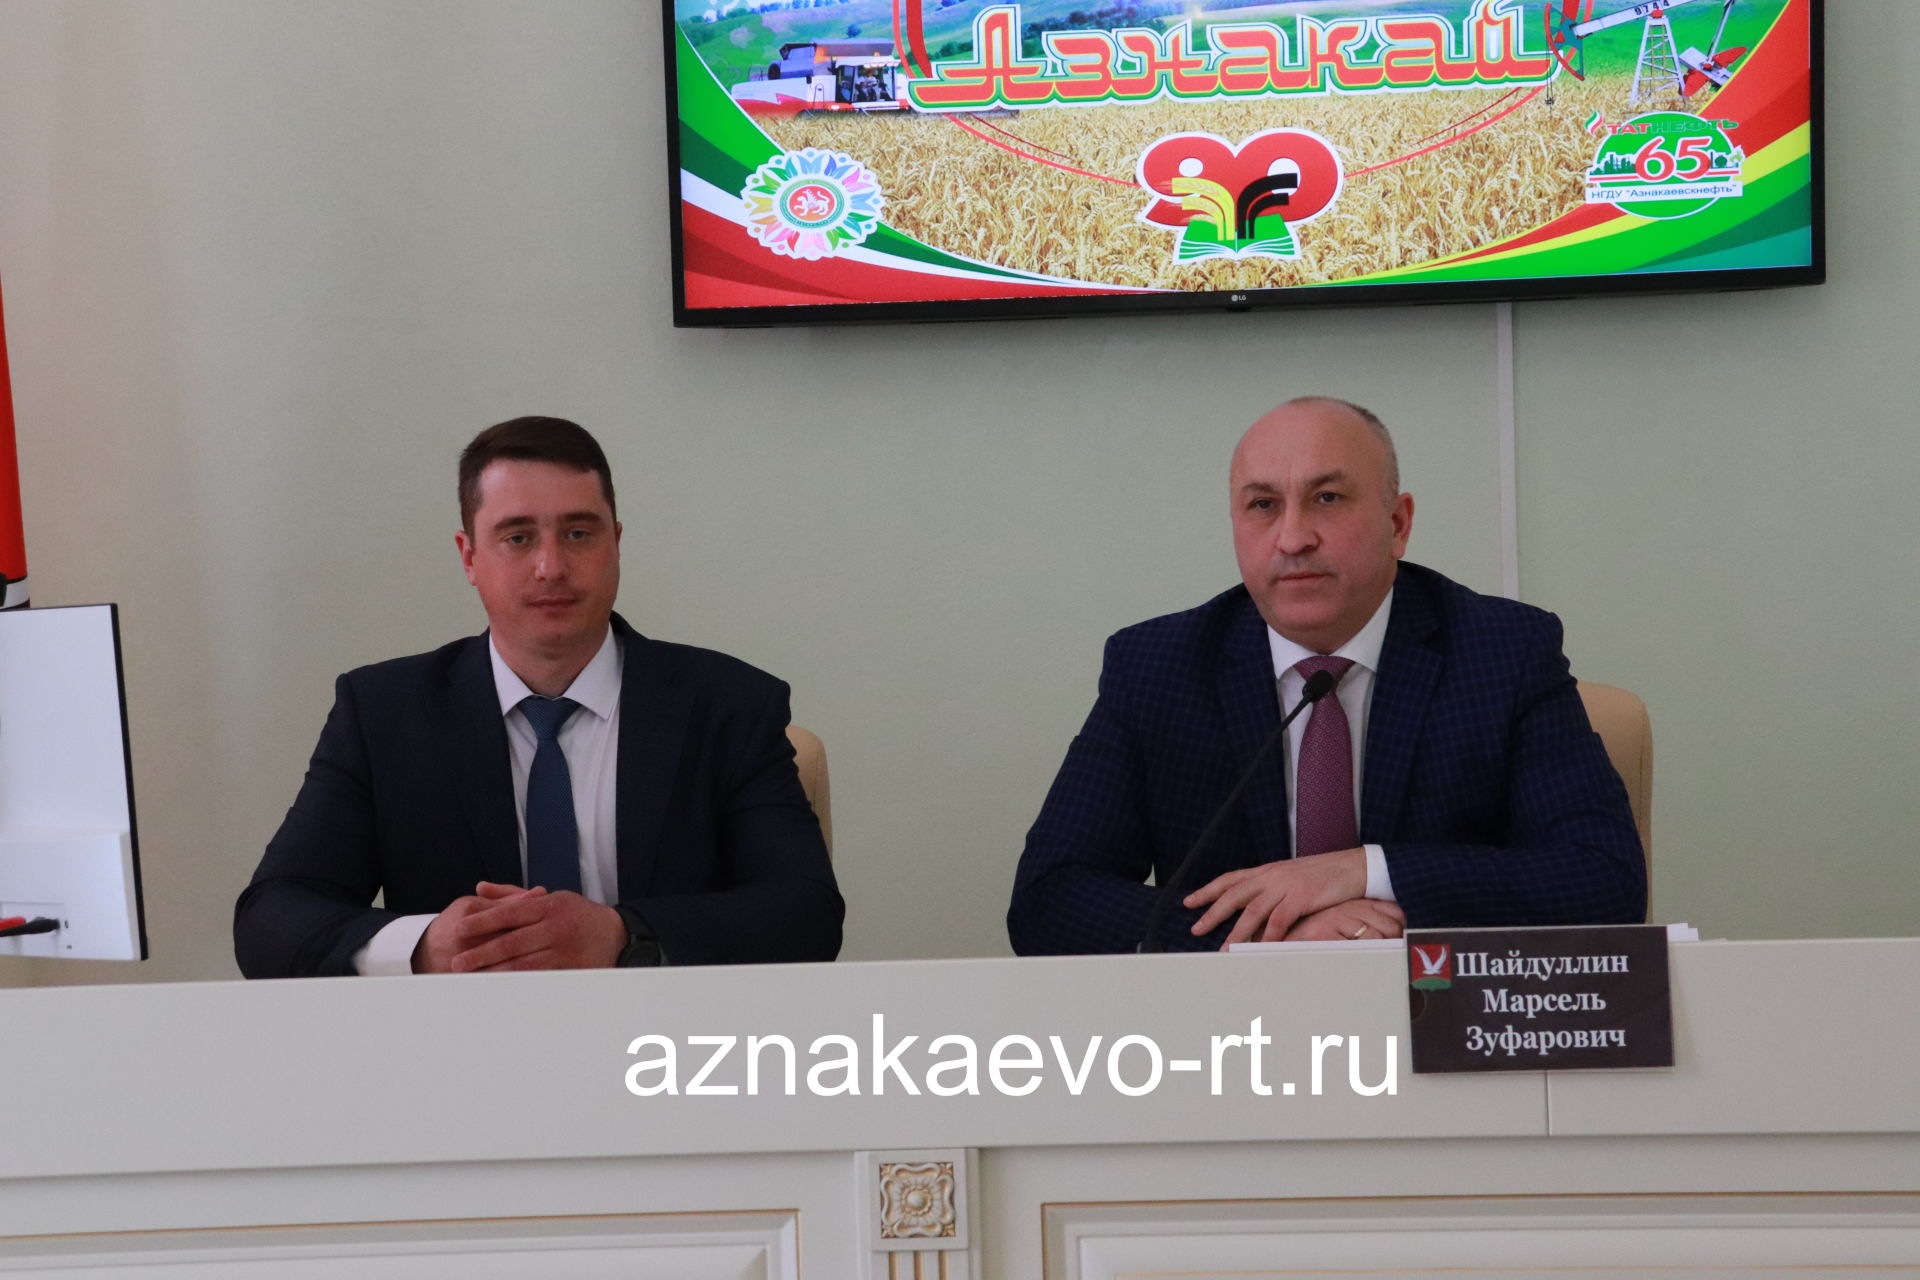 Назначен новый руководитель исполнительного комитета города Азнакаево